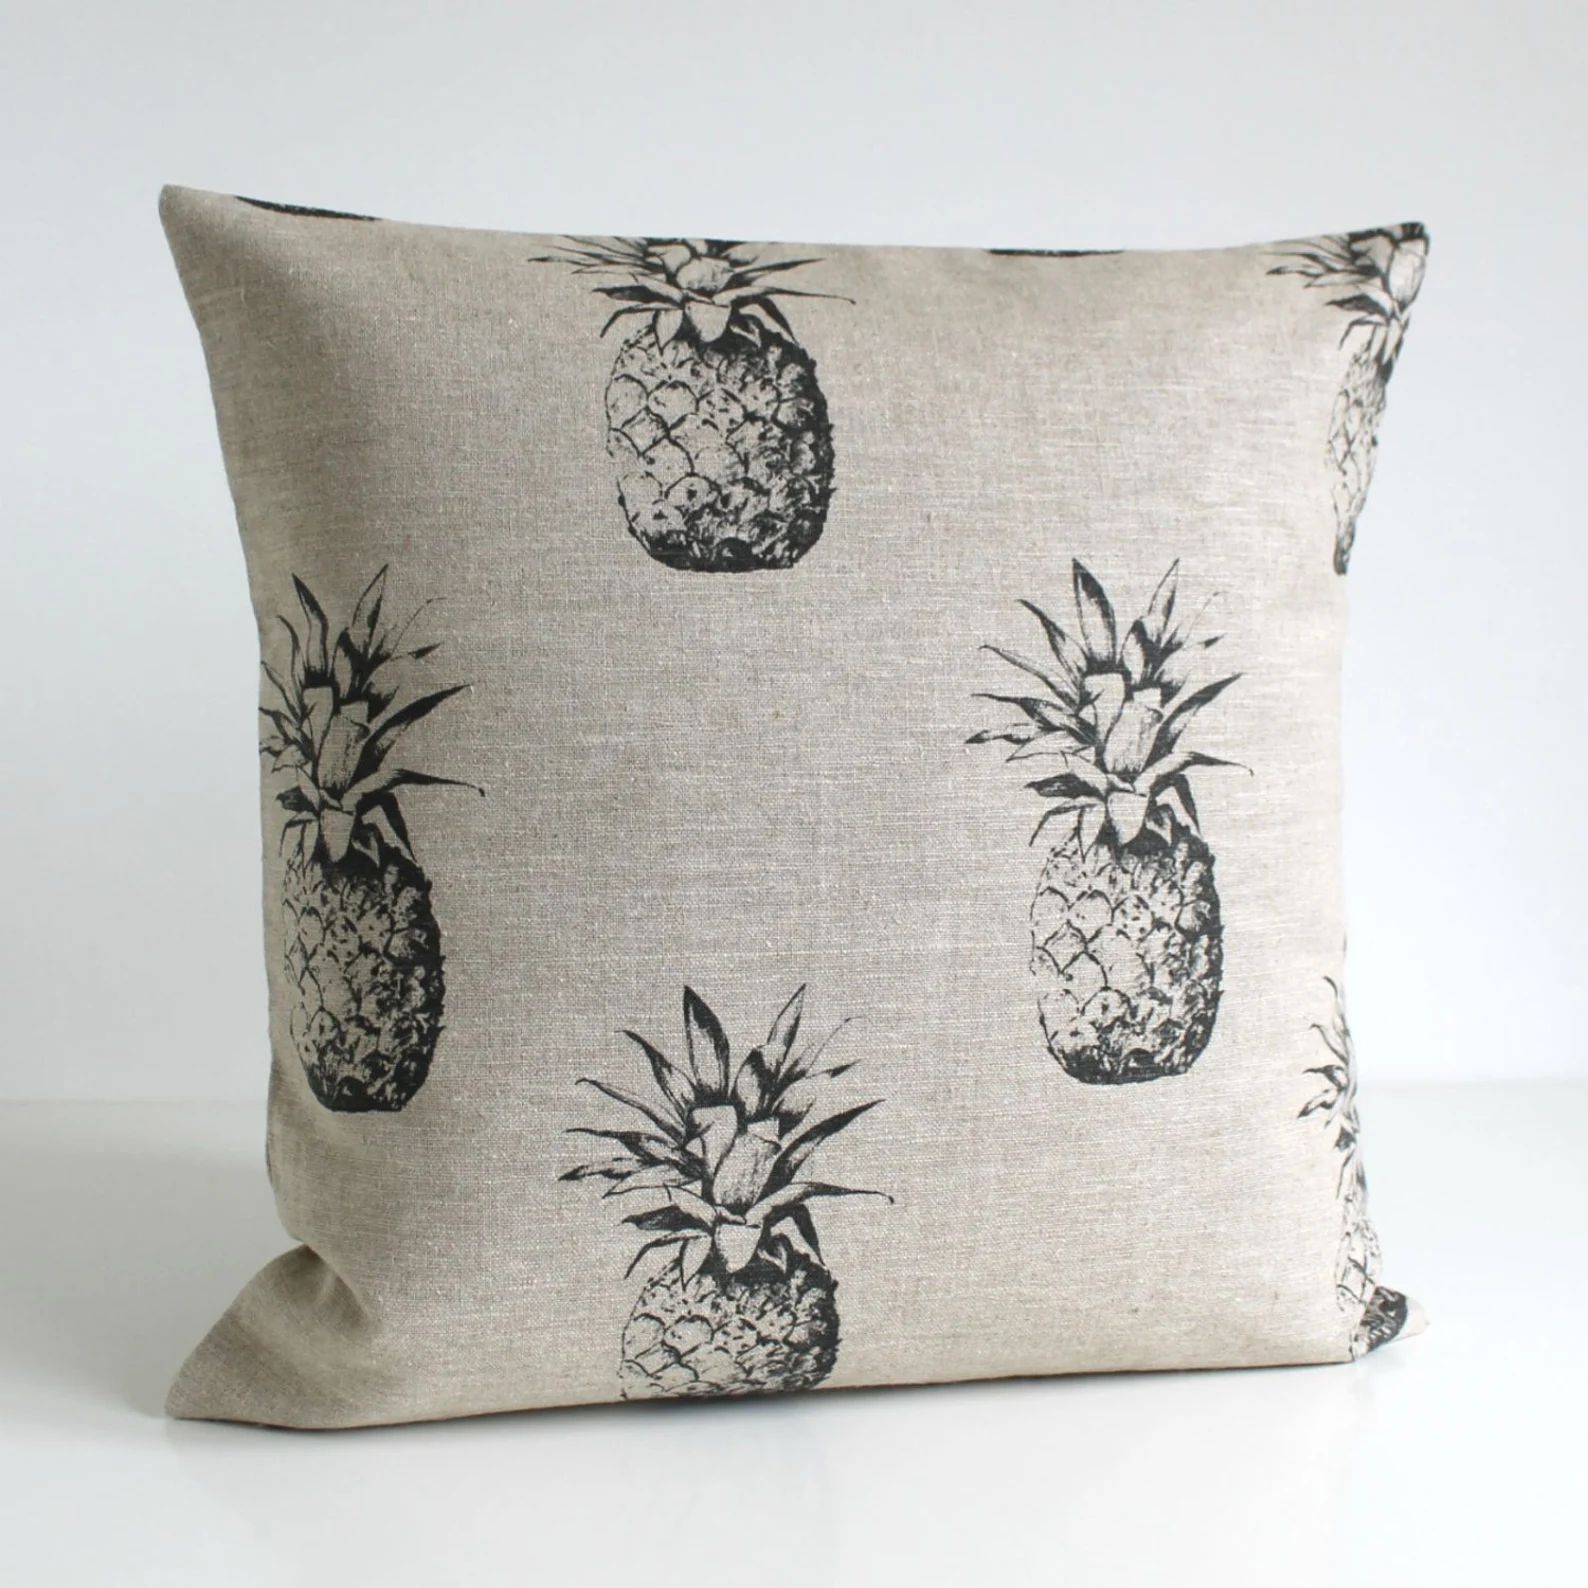 Pineapple pillow cover, 100% linen, Natural Pillow Cover, Pineapple Pillow, Pillow Sham, Cushion ... | Etsy (US)